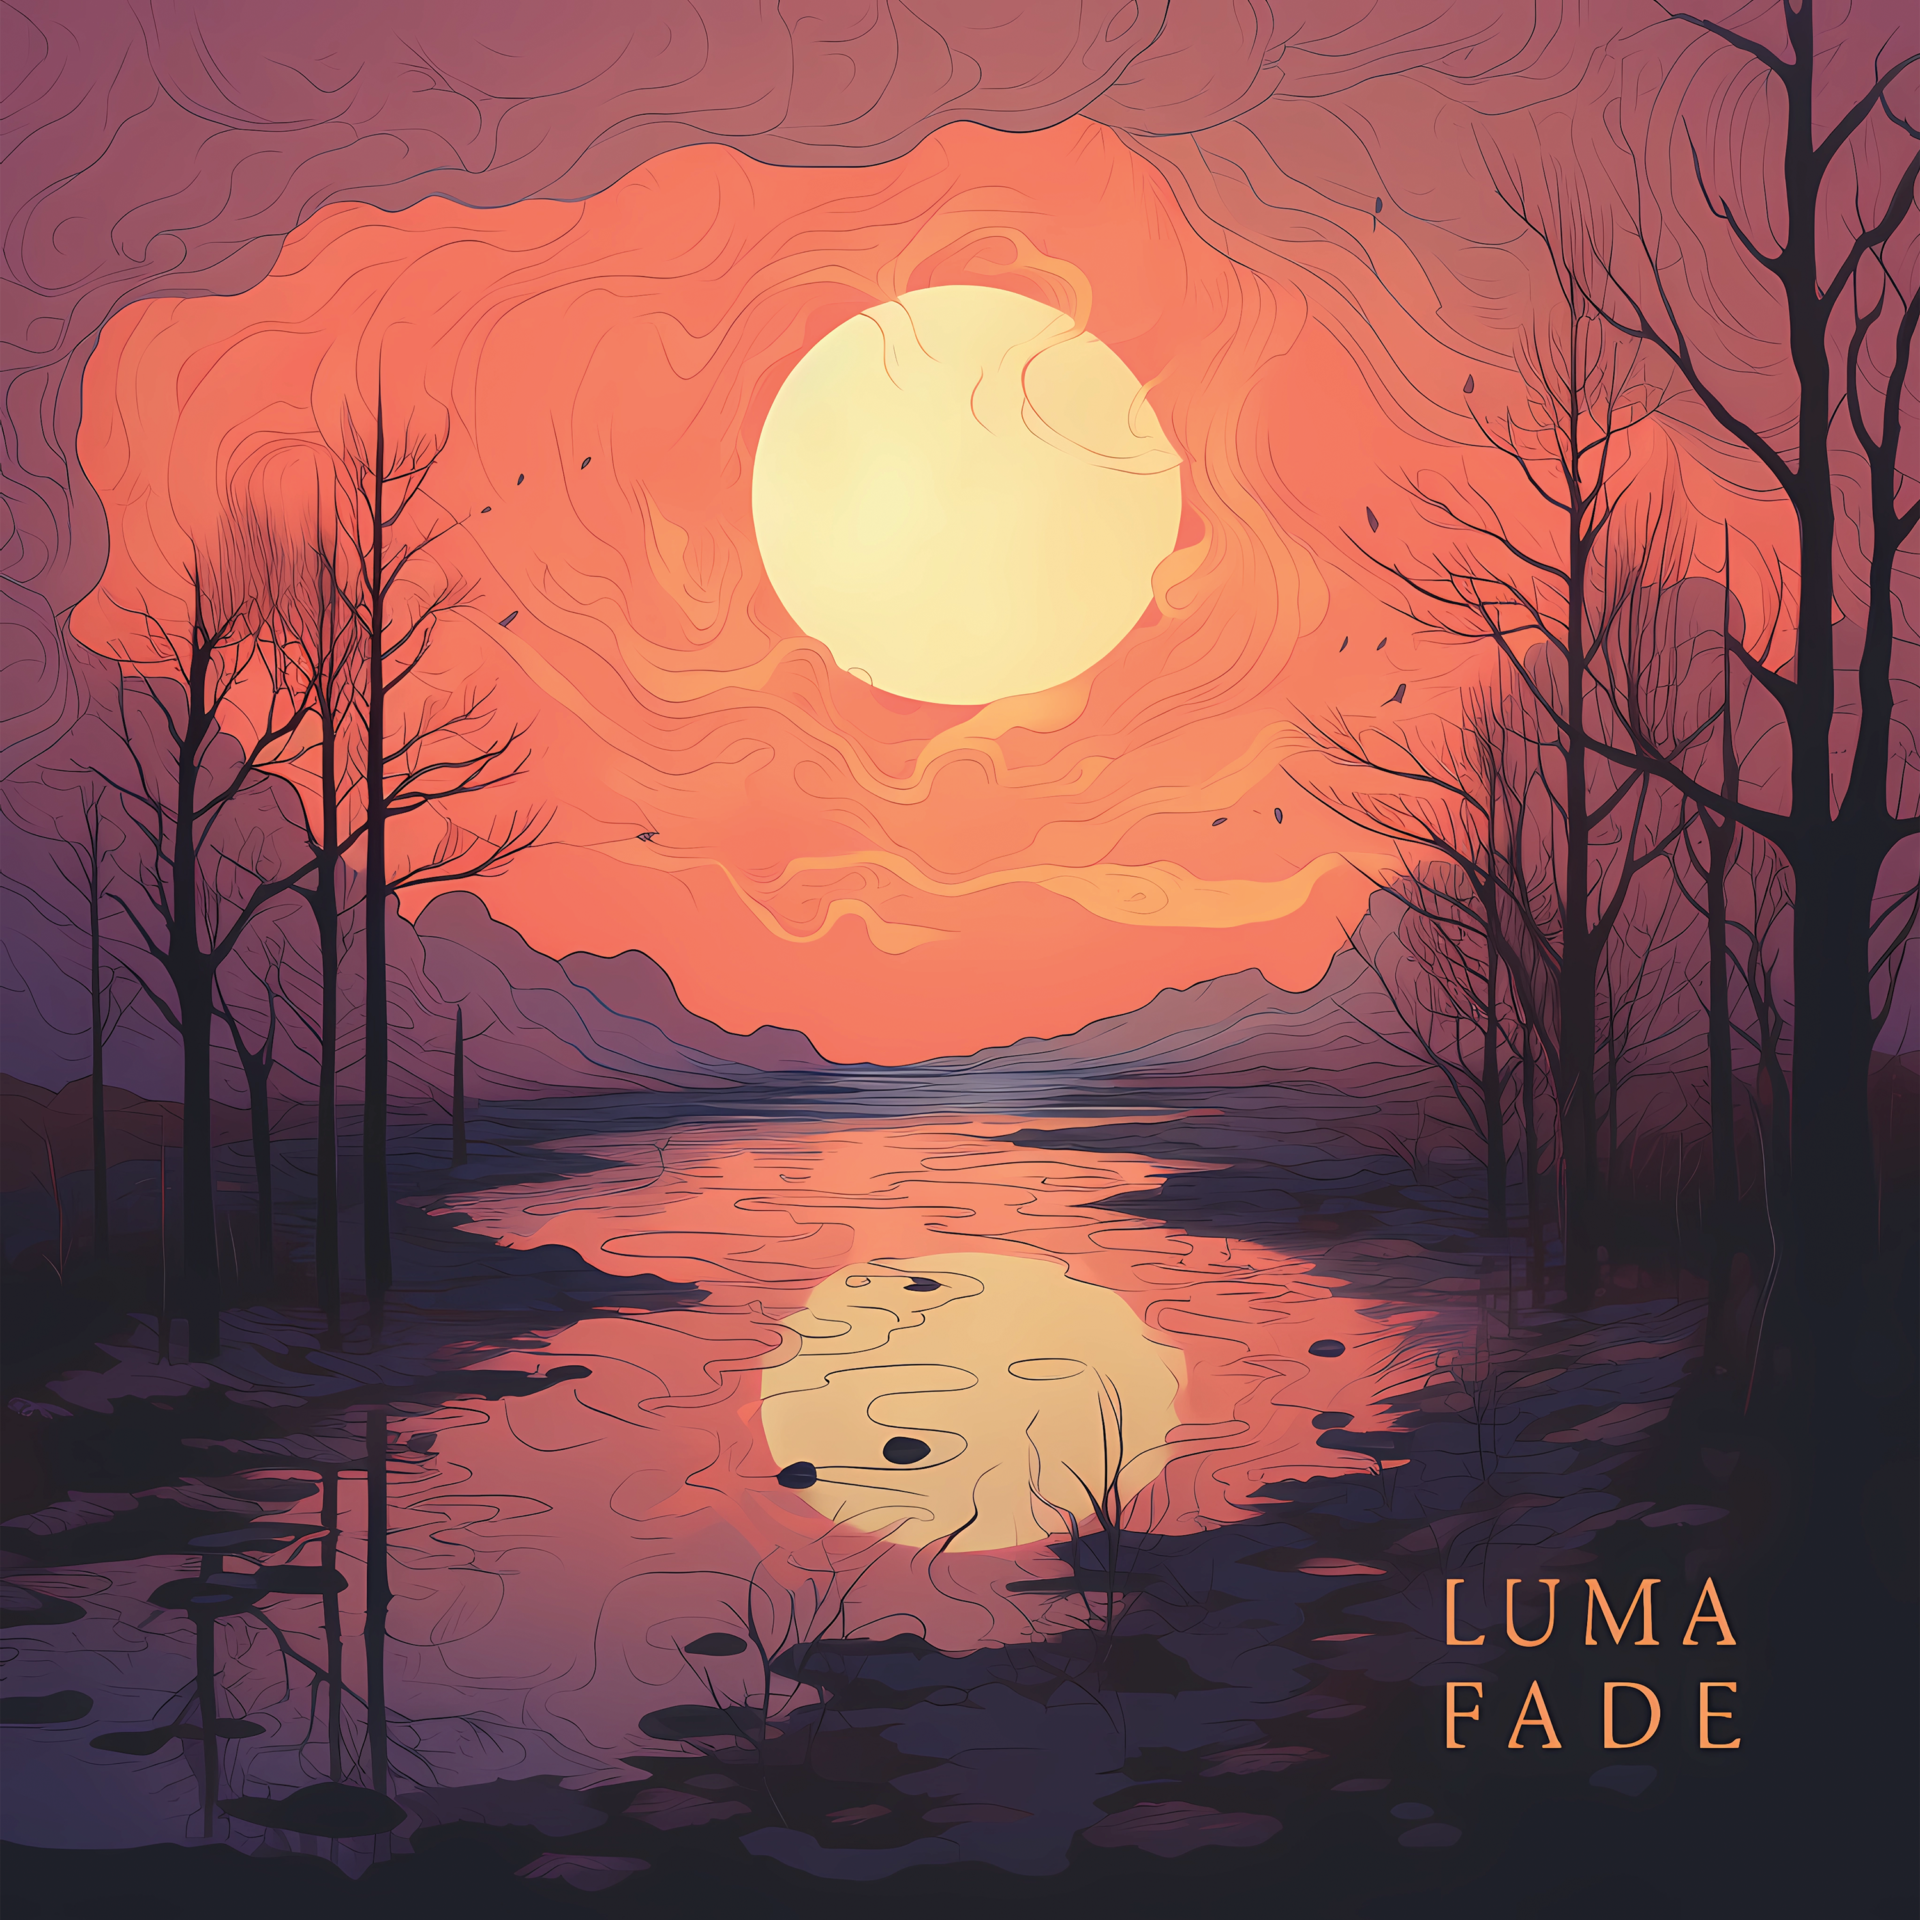 Lunar Decay by Luma Fade album cover art